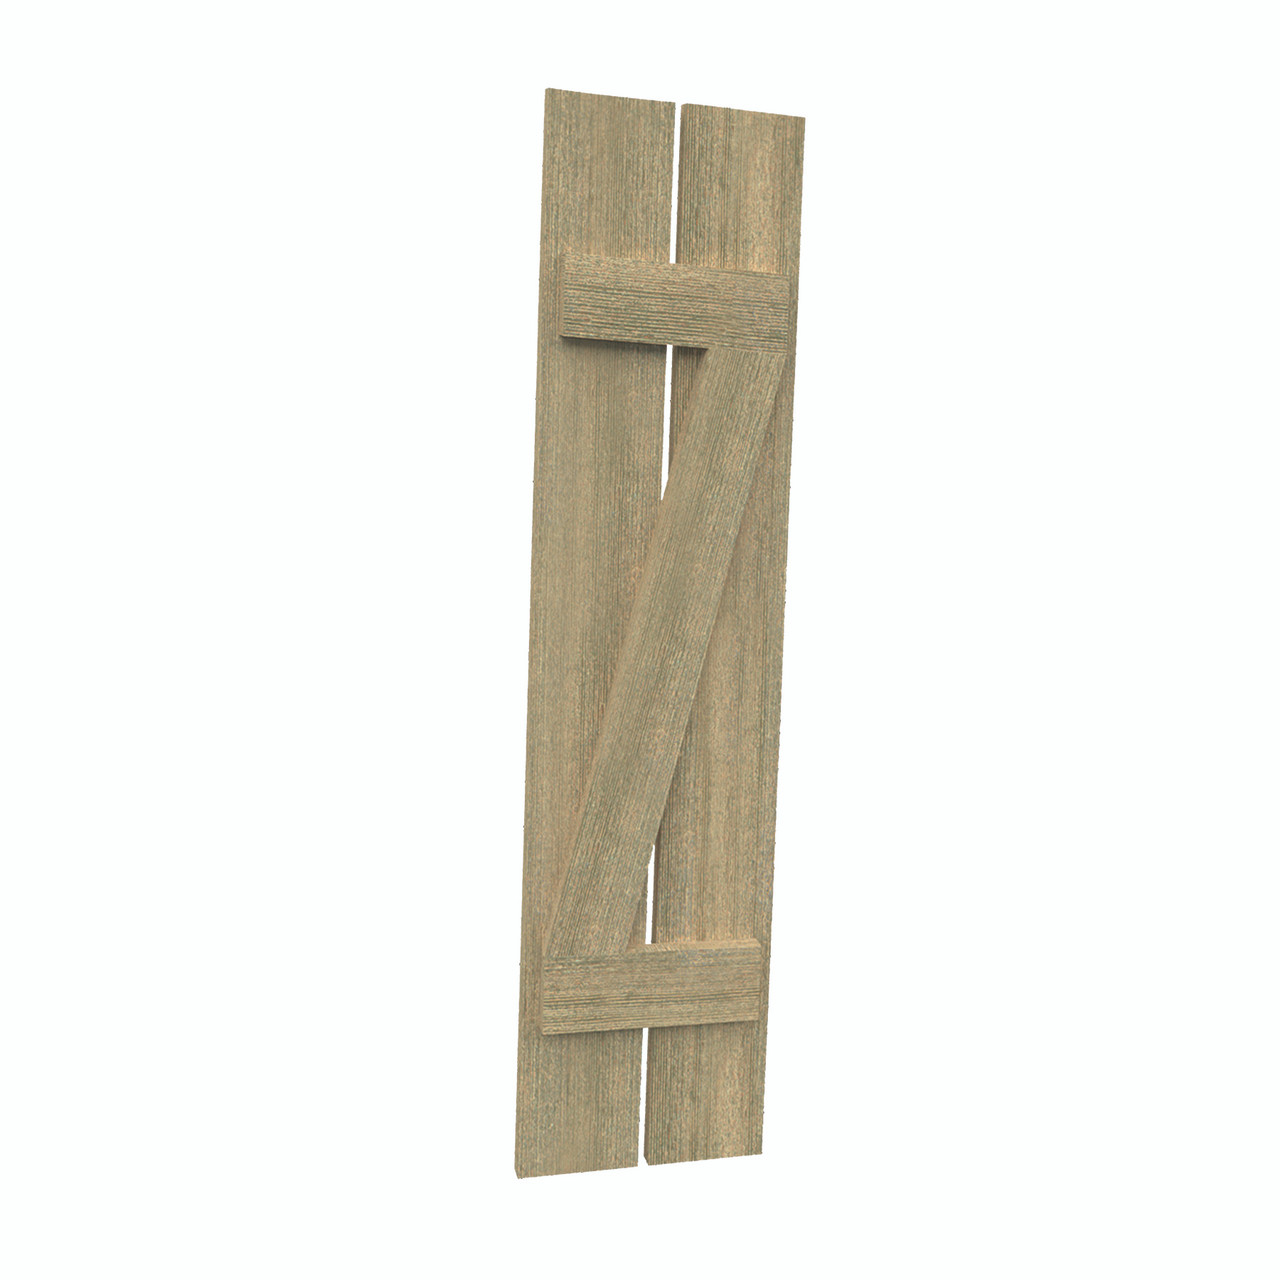 12 inch by 69 inch Plank Shutter with 2-Plank, Z-Batten